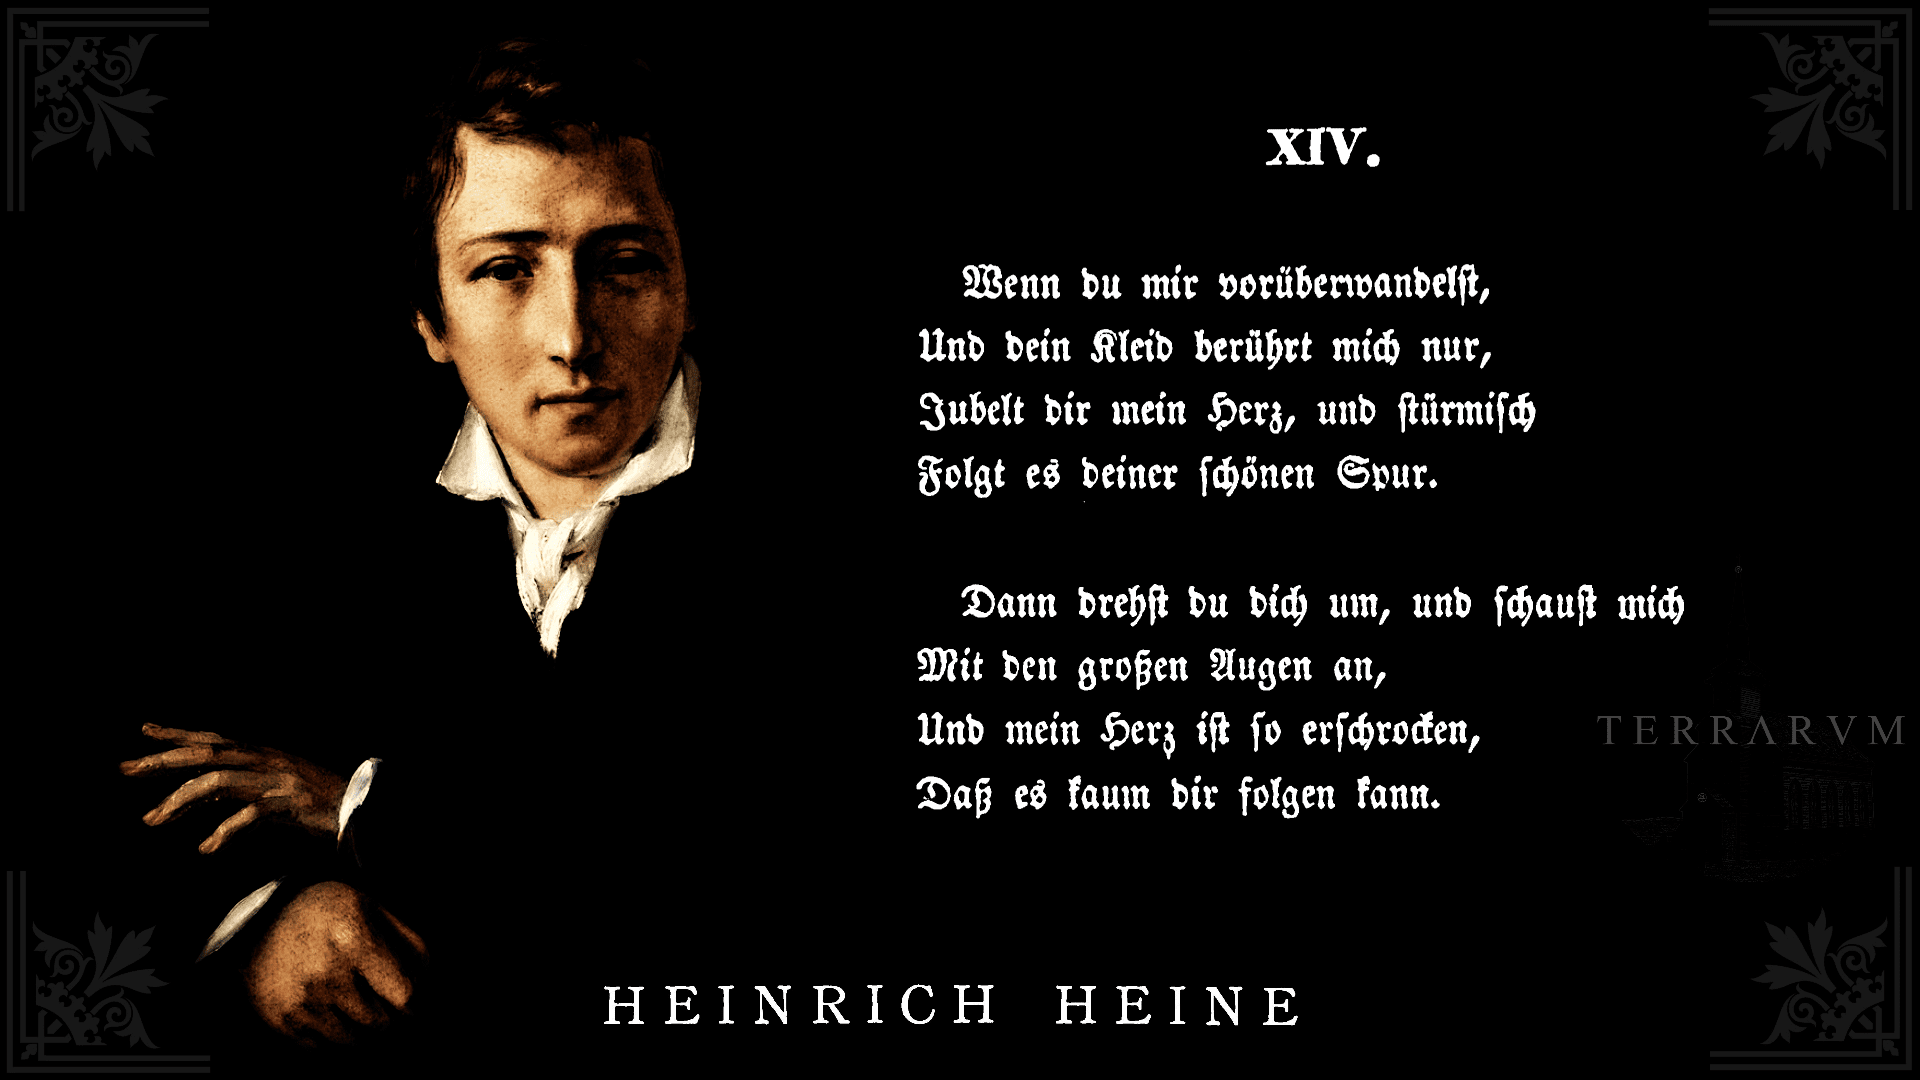 186. Heinrich Heine. Wenn du mir vor berwandelst